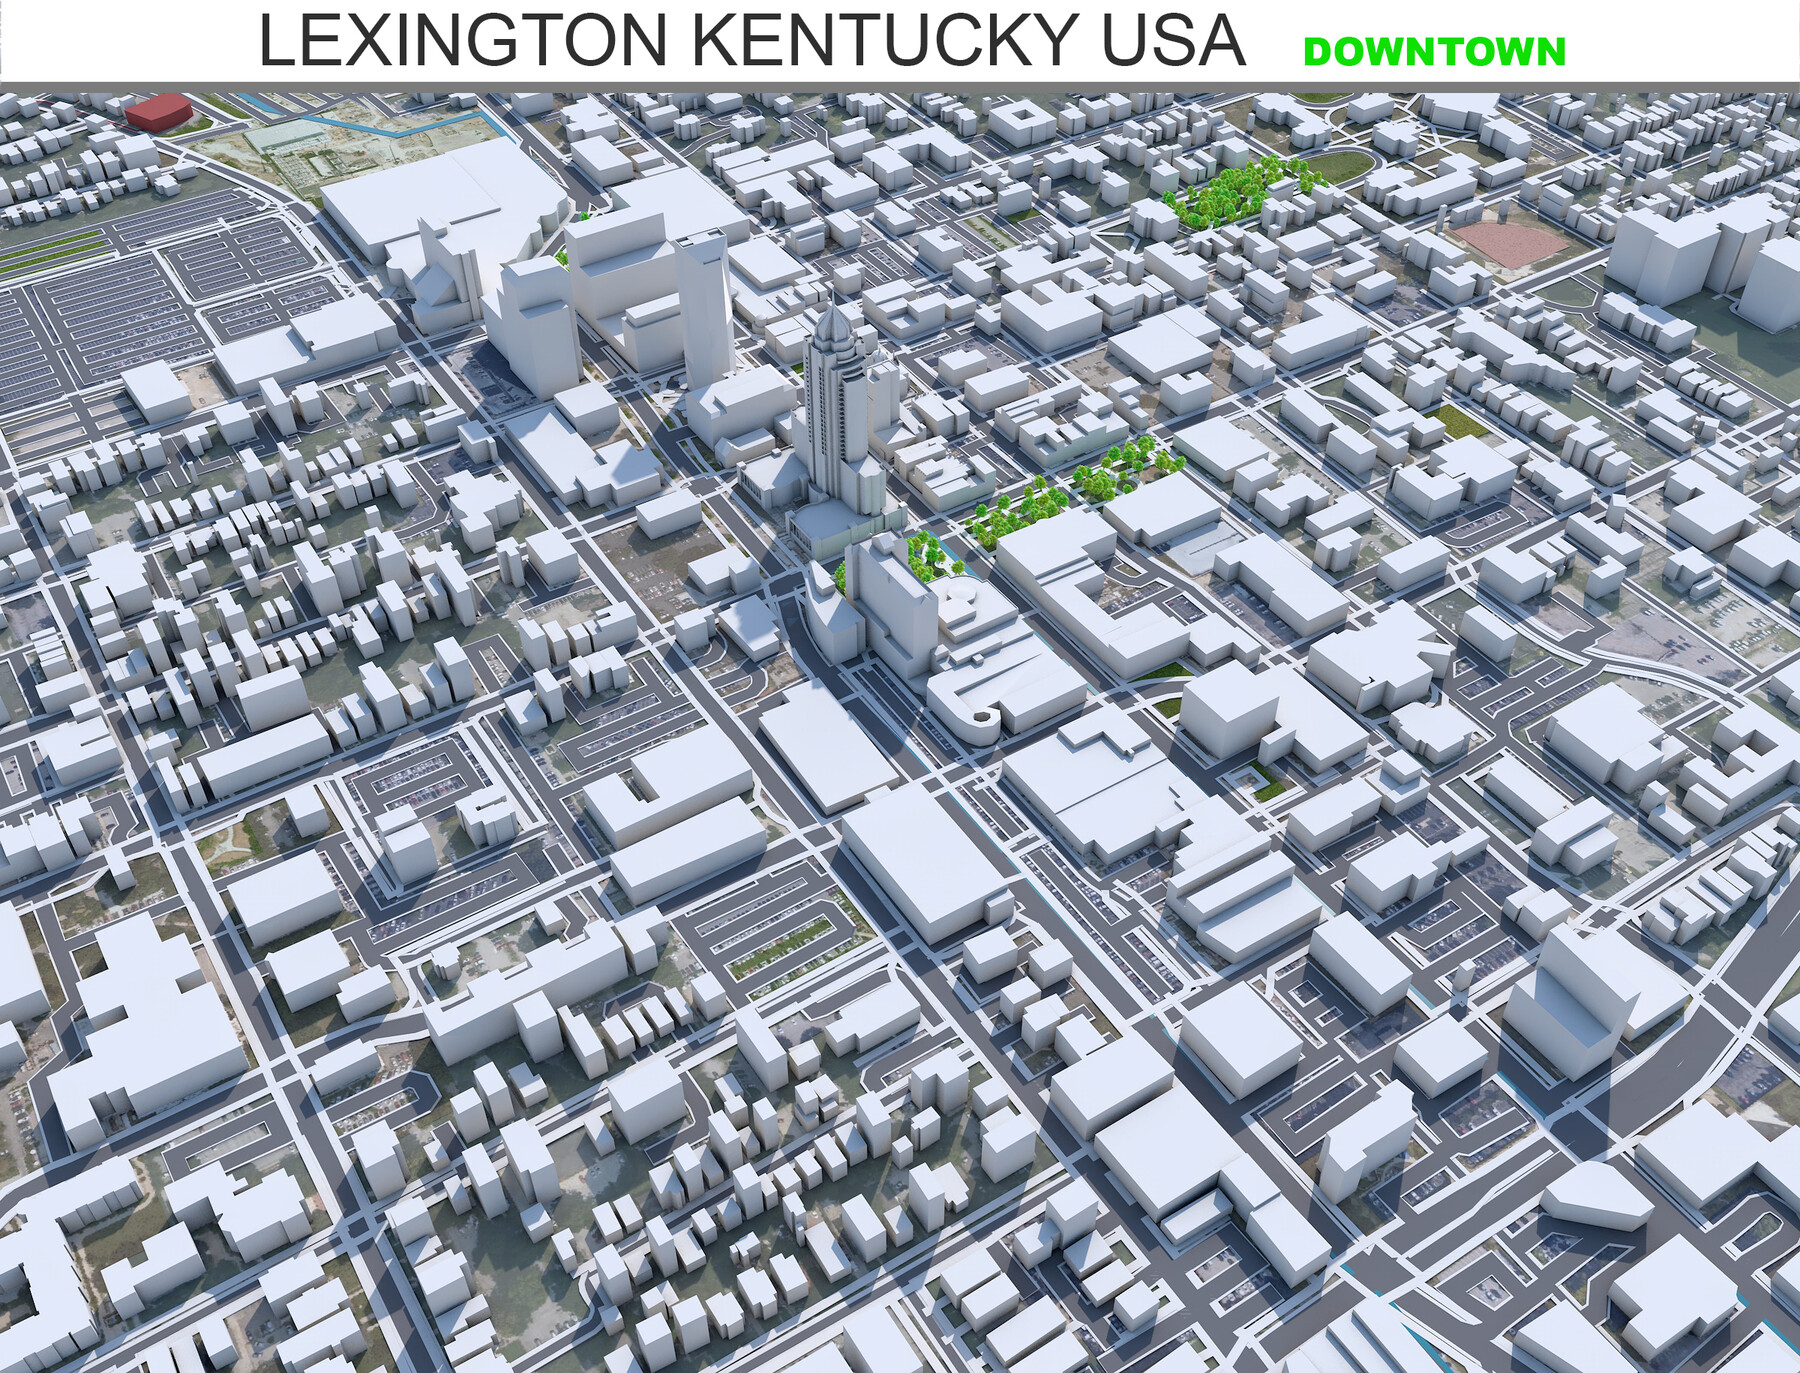 ArtStation - Lexington Kentucky USA Downtown 3d model | Game Assets